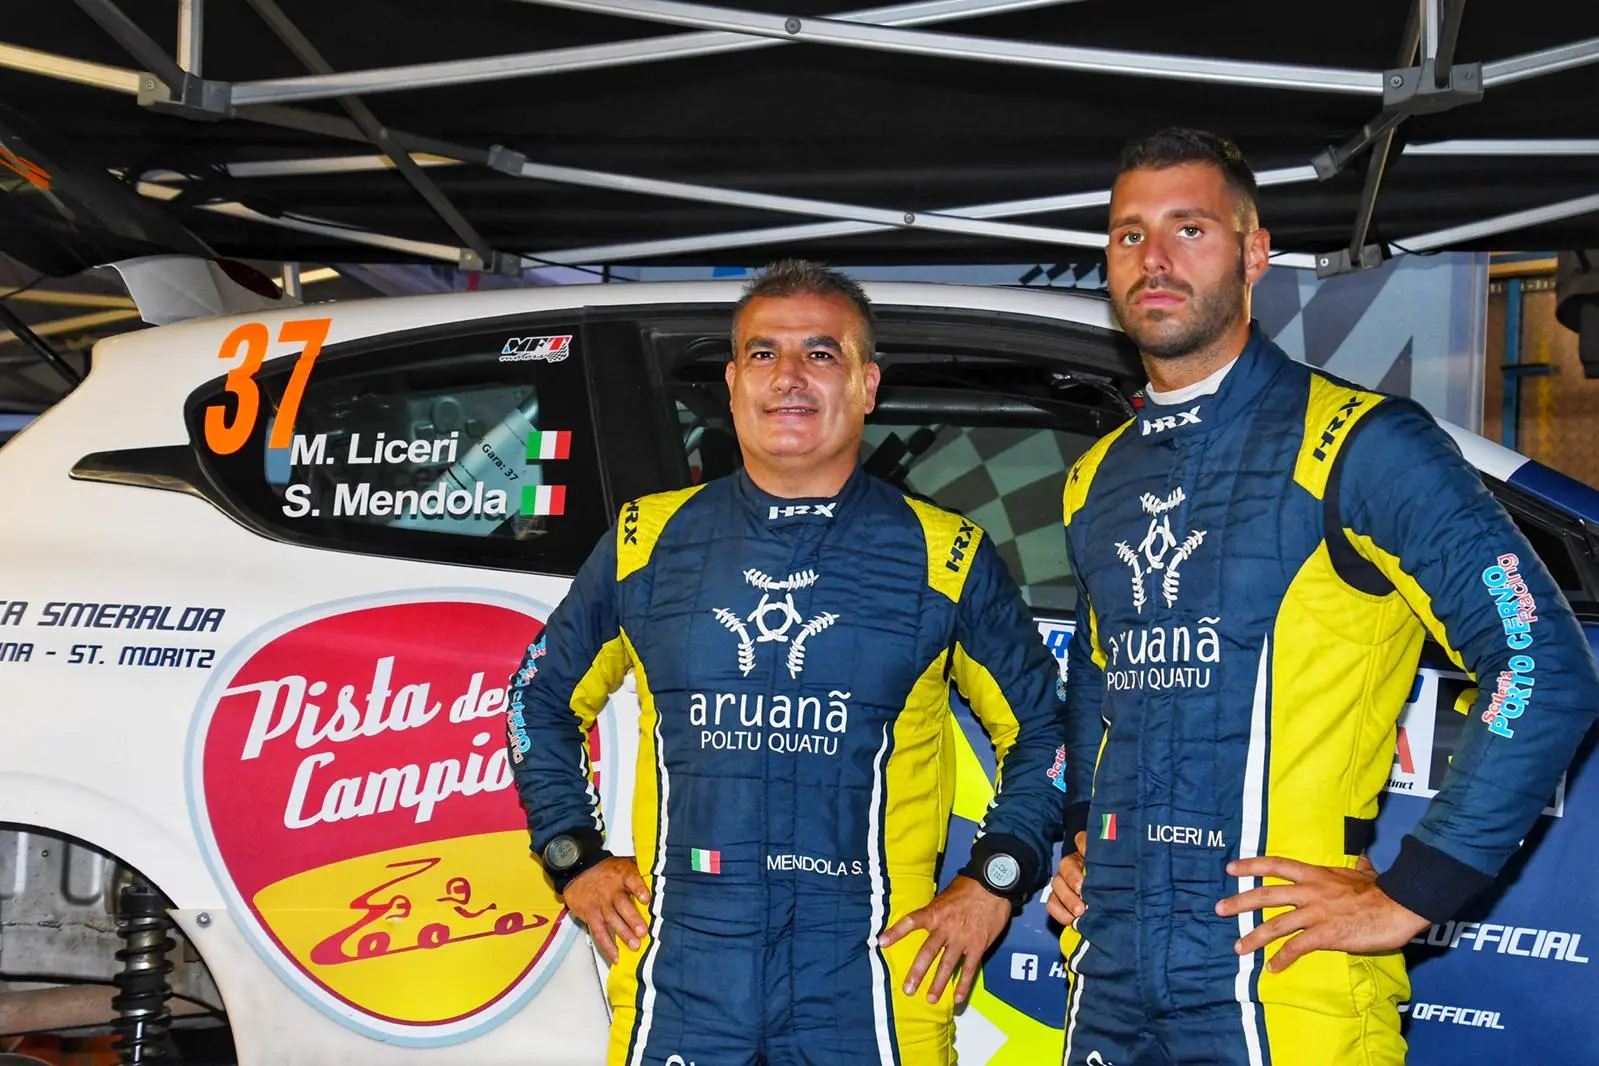 Salvatore Mendola e Michele Liceri della Porto Cervo Racing (foto Chessa)